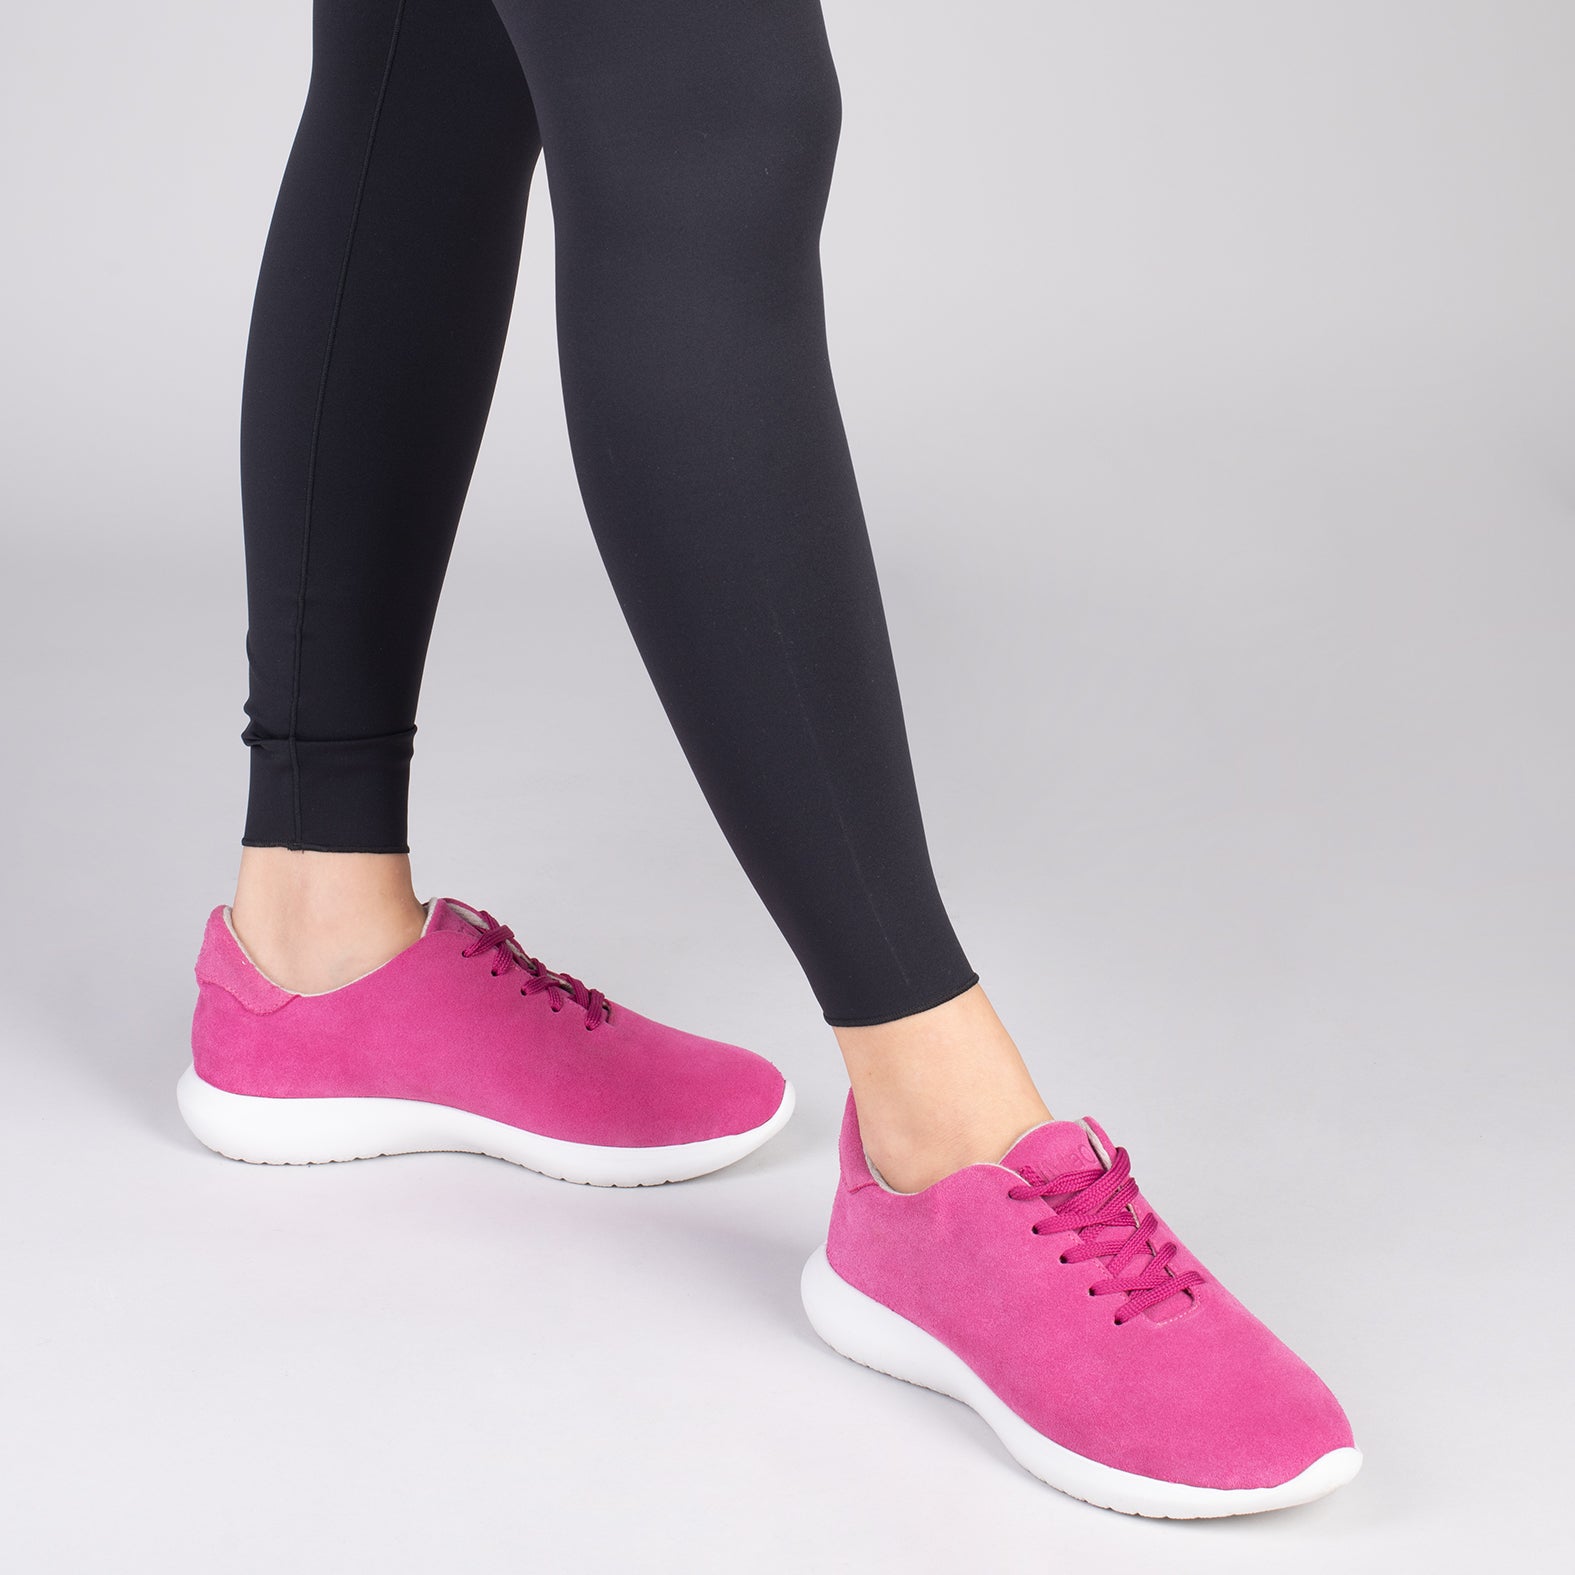 WALK – Chaussures confortables pour femme FUCHSIA